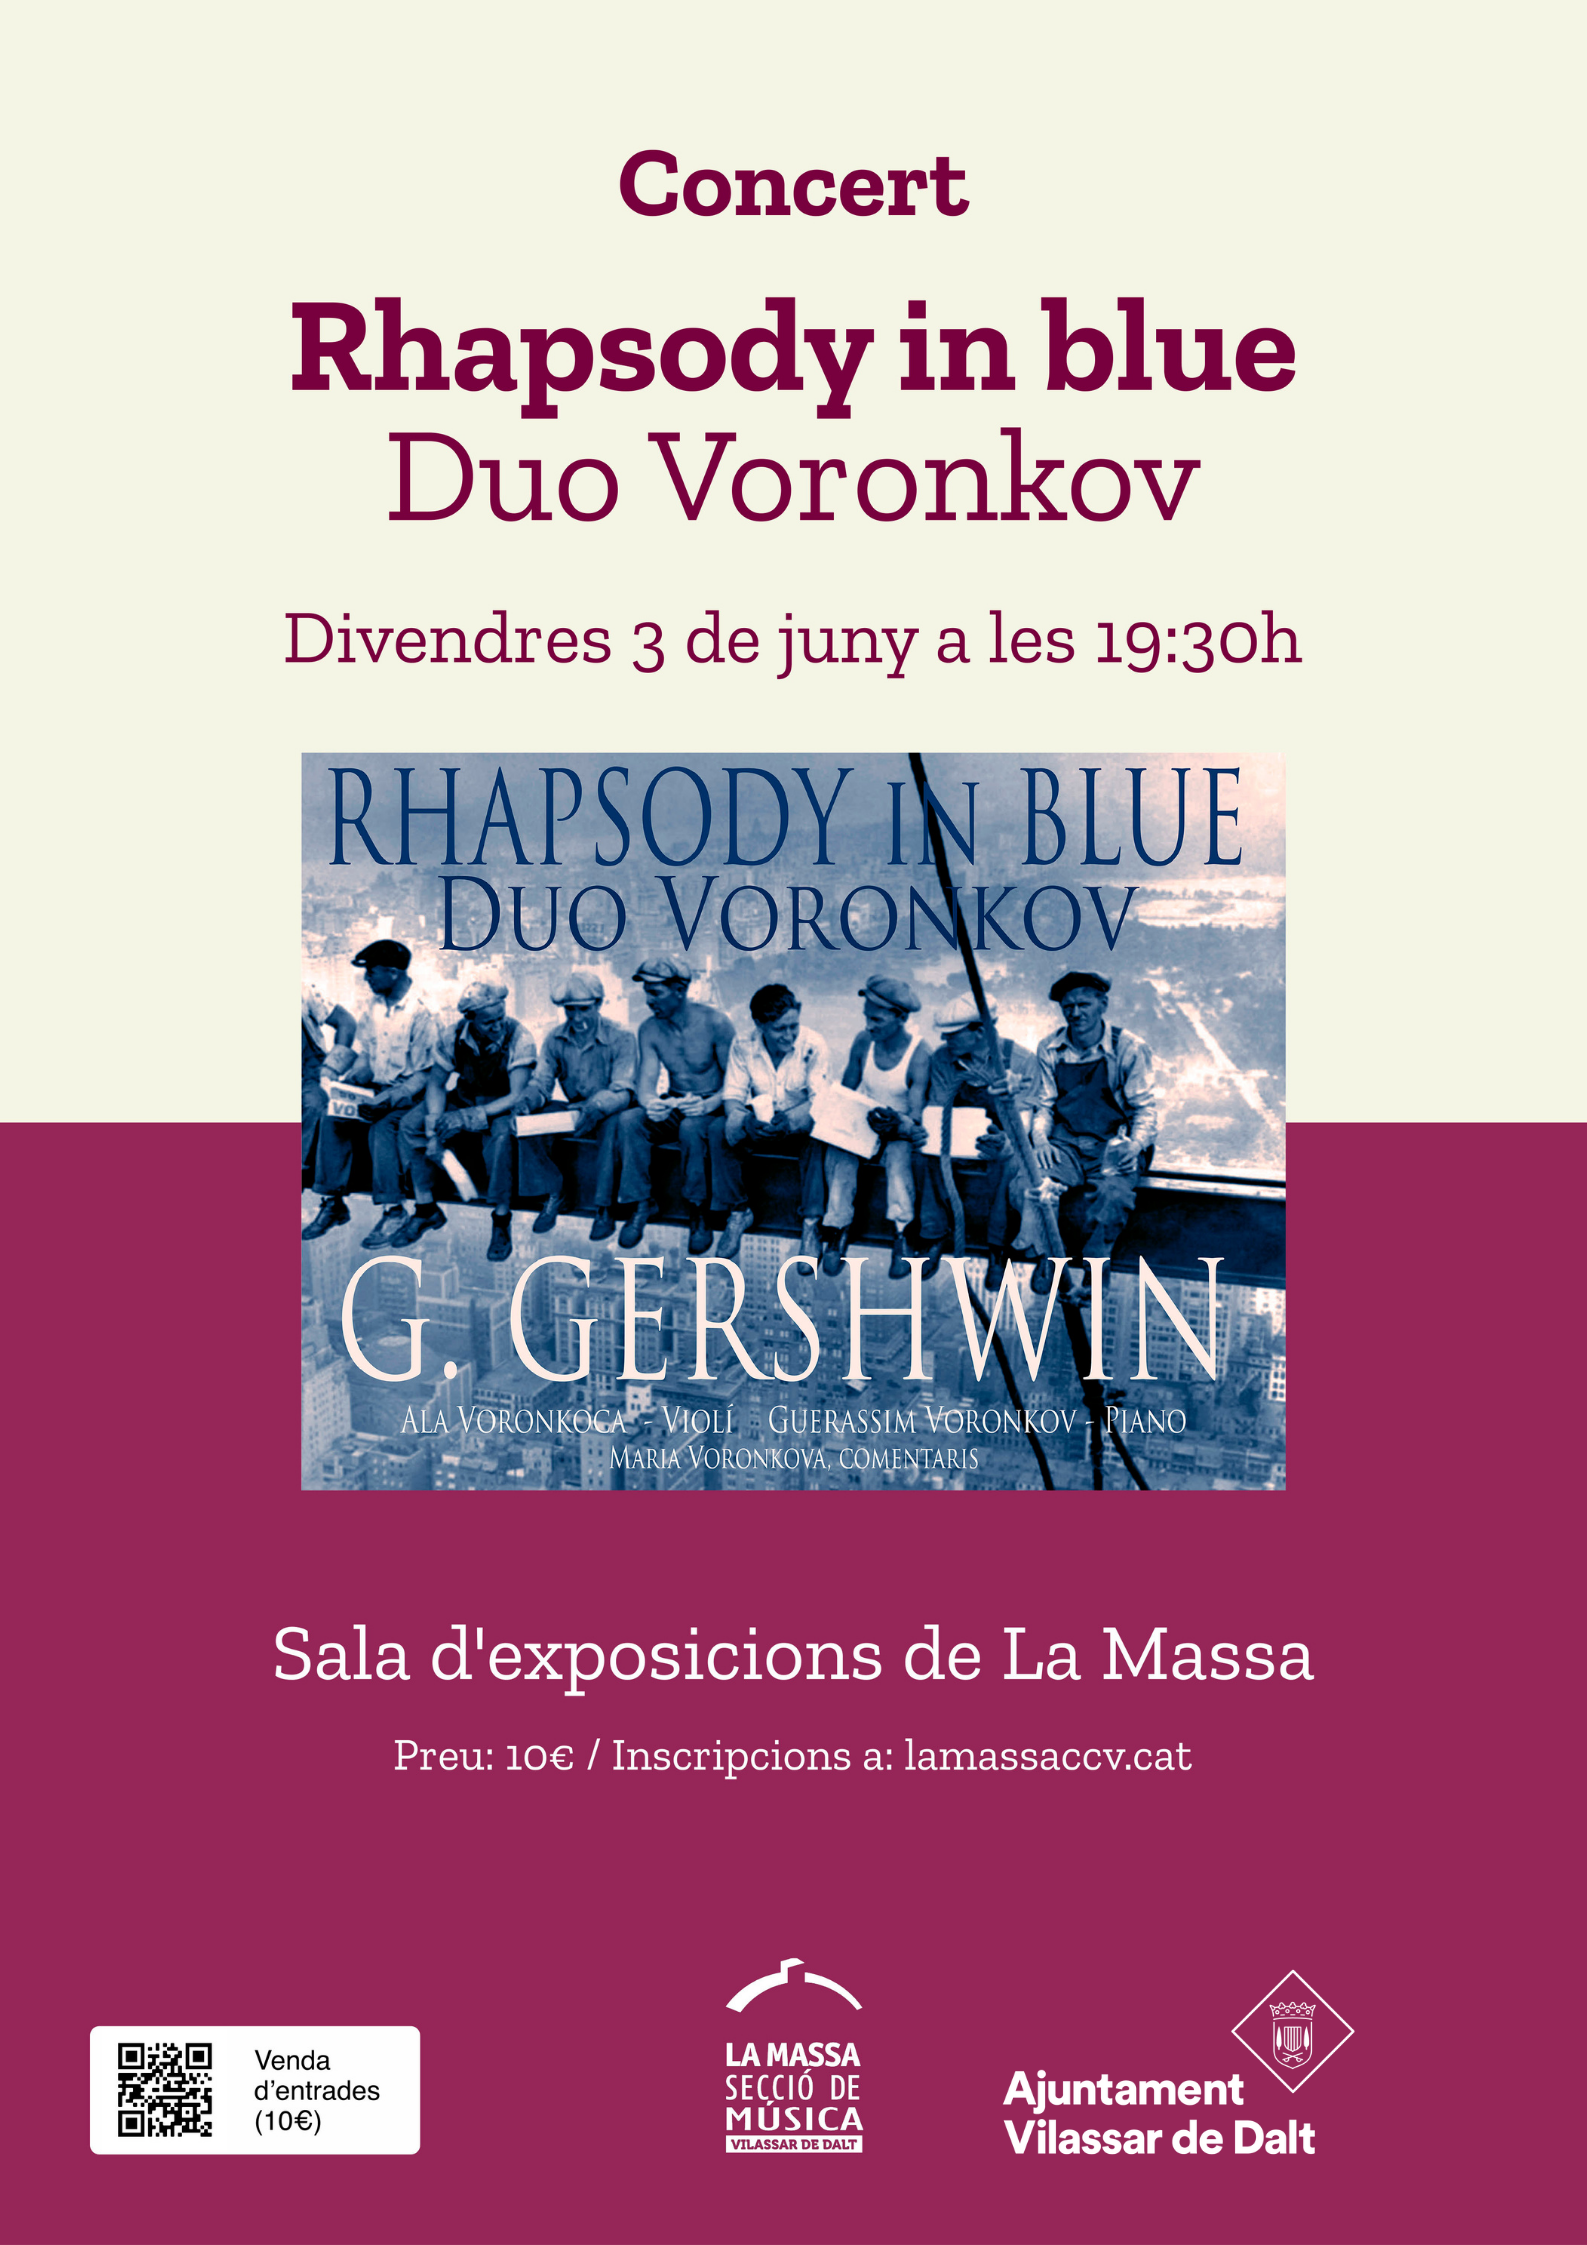 Concert: Rhapsody in blue